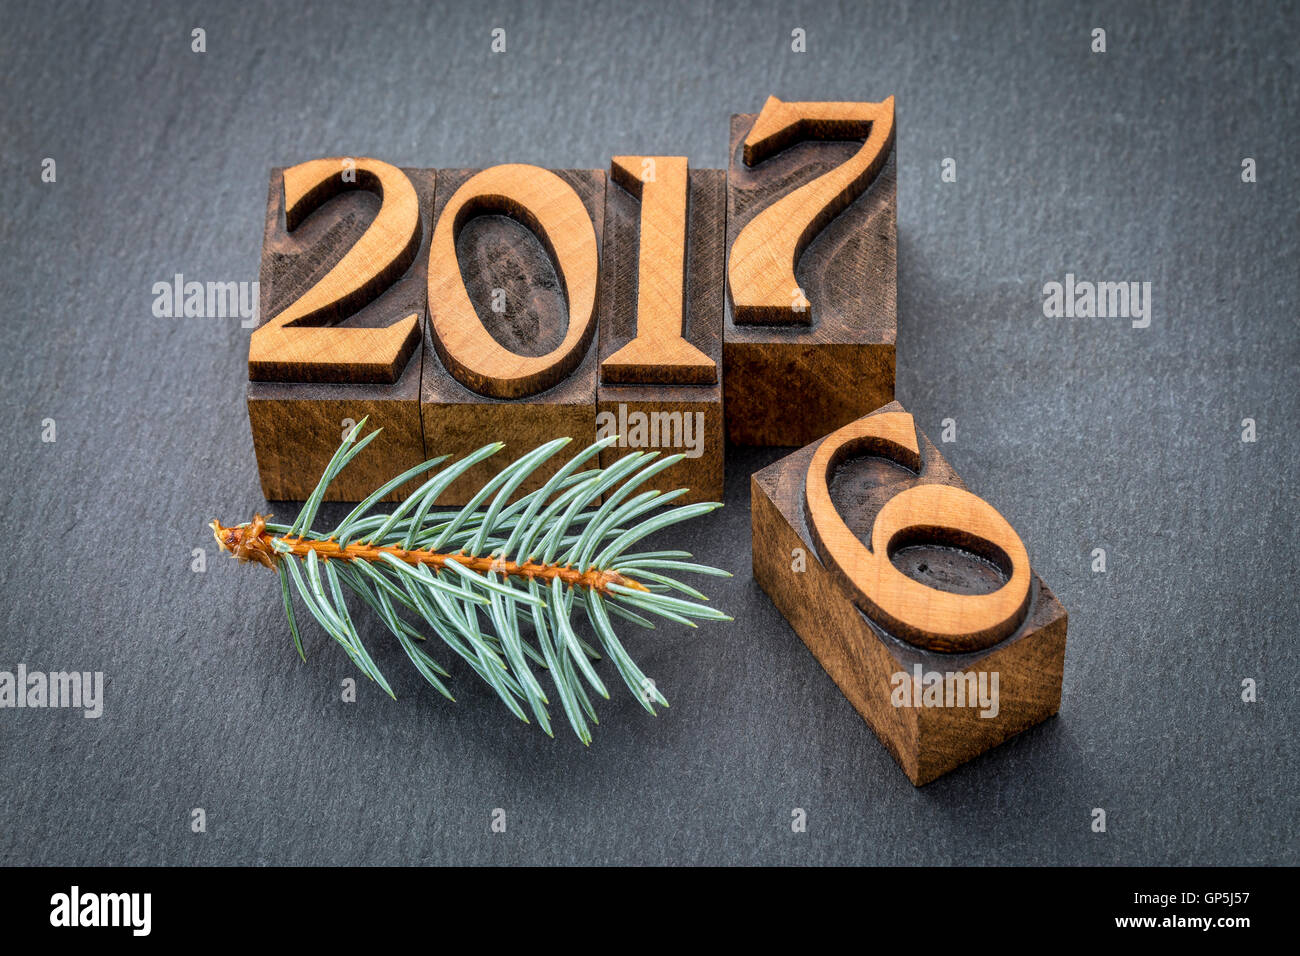 Nouvelle année 2017 Année 2016 remplaçant l'ancien - type de bois letterpress printing blocs sur une ardoise Banque D'Images